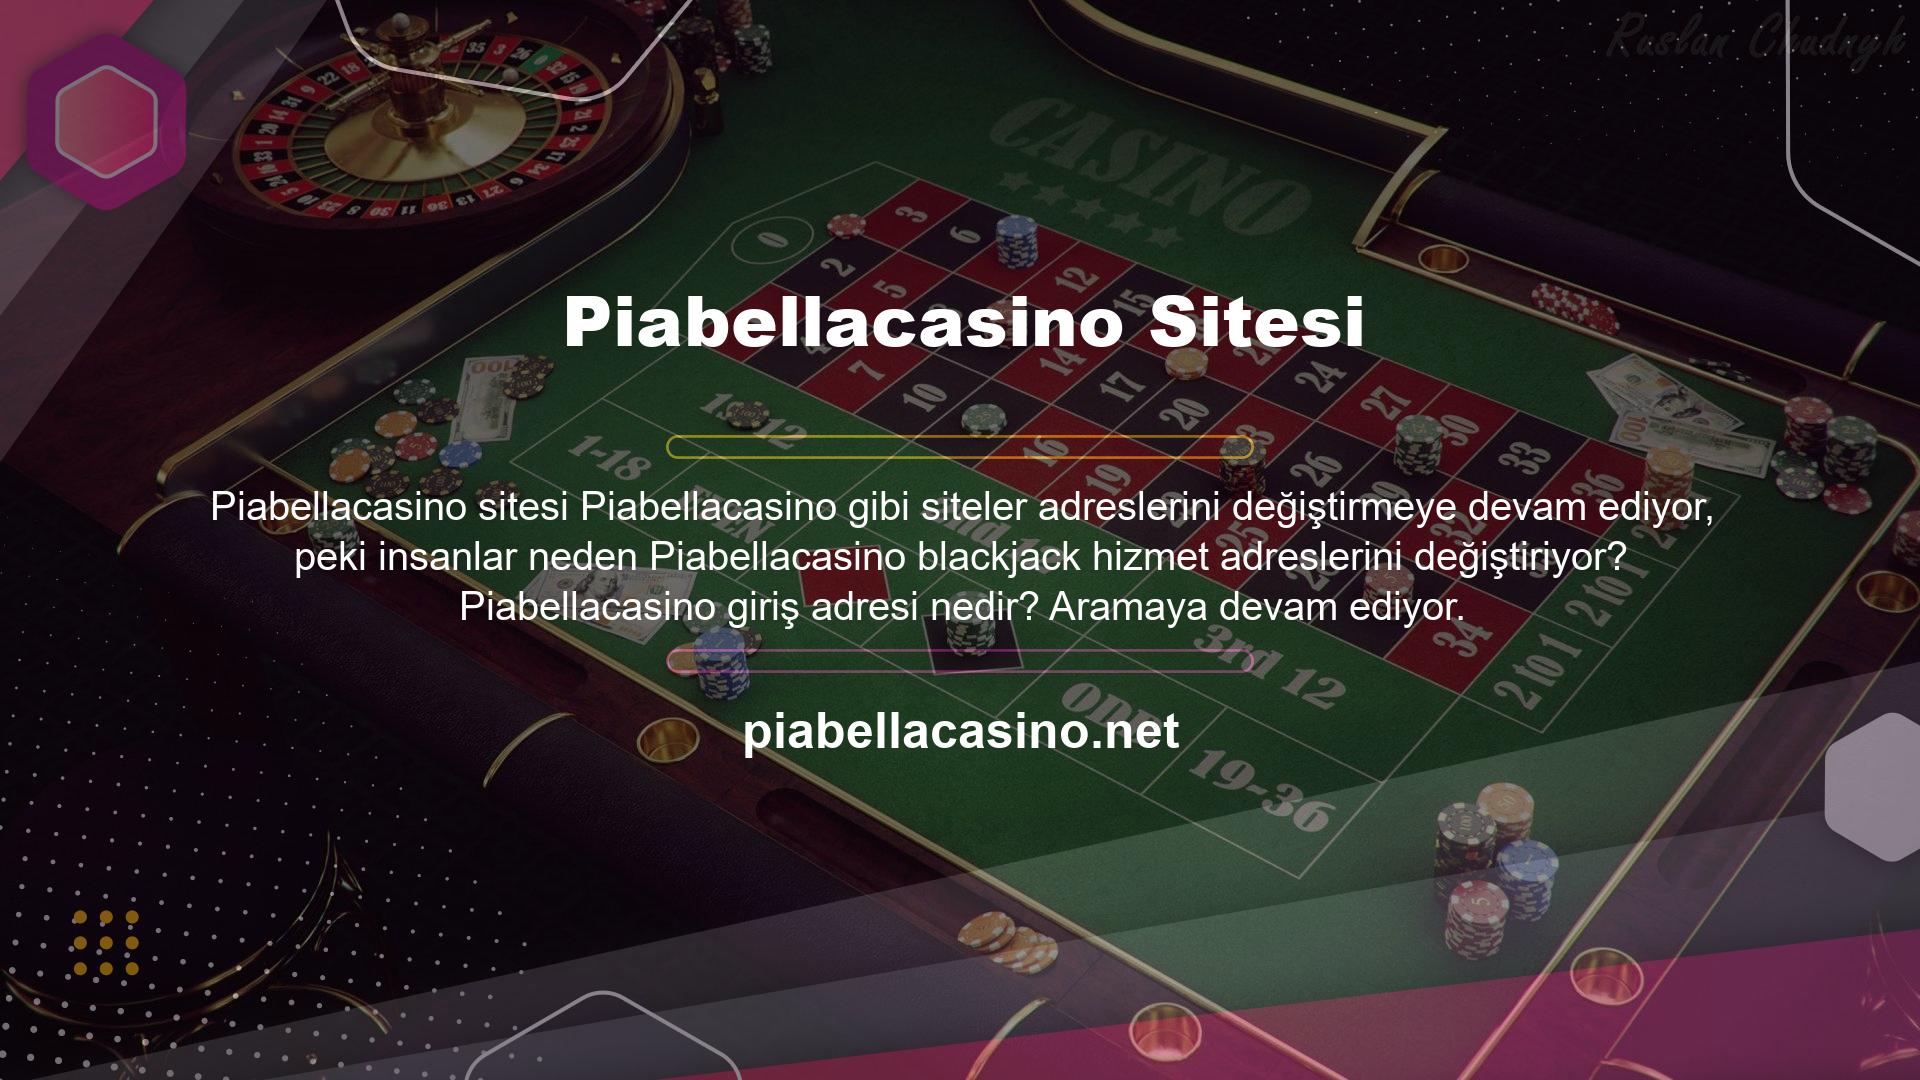 Piabellacasino Canlı Bahis sitesi üyeleri etkilenmemek için sürekli olarak site adresini güncellemektedir